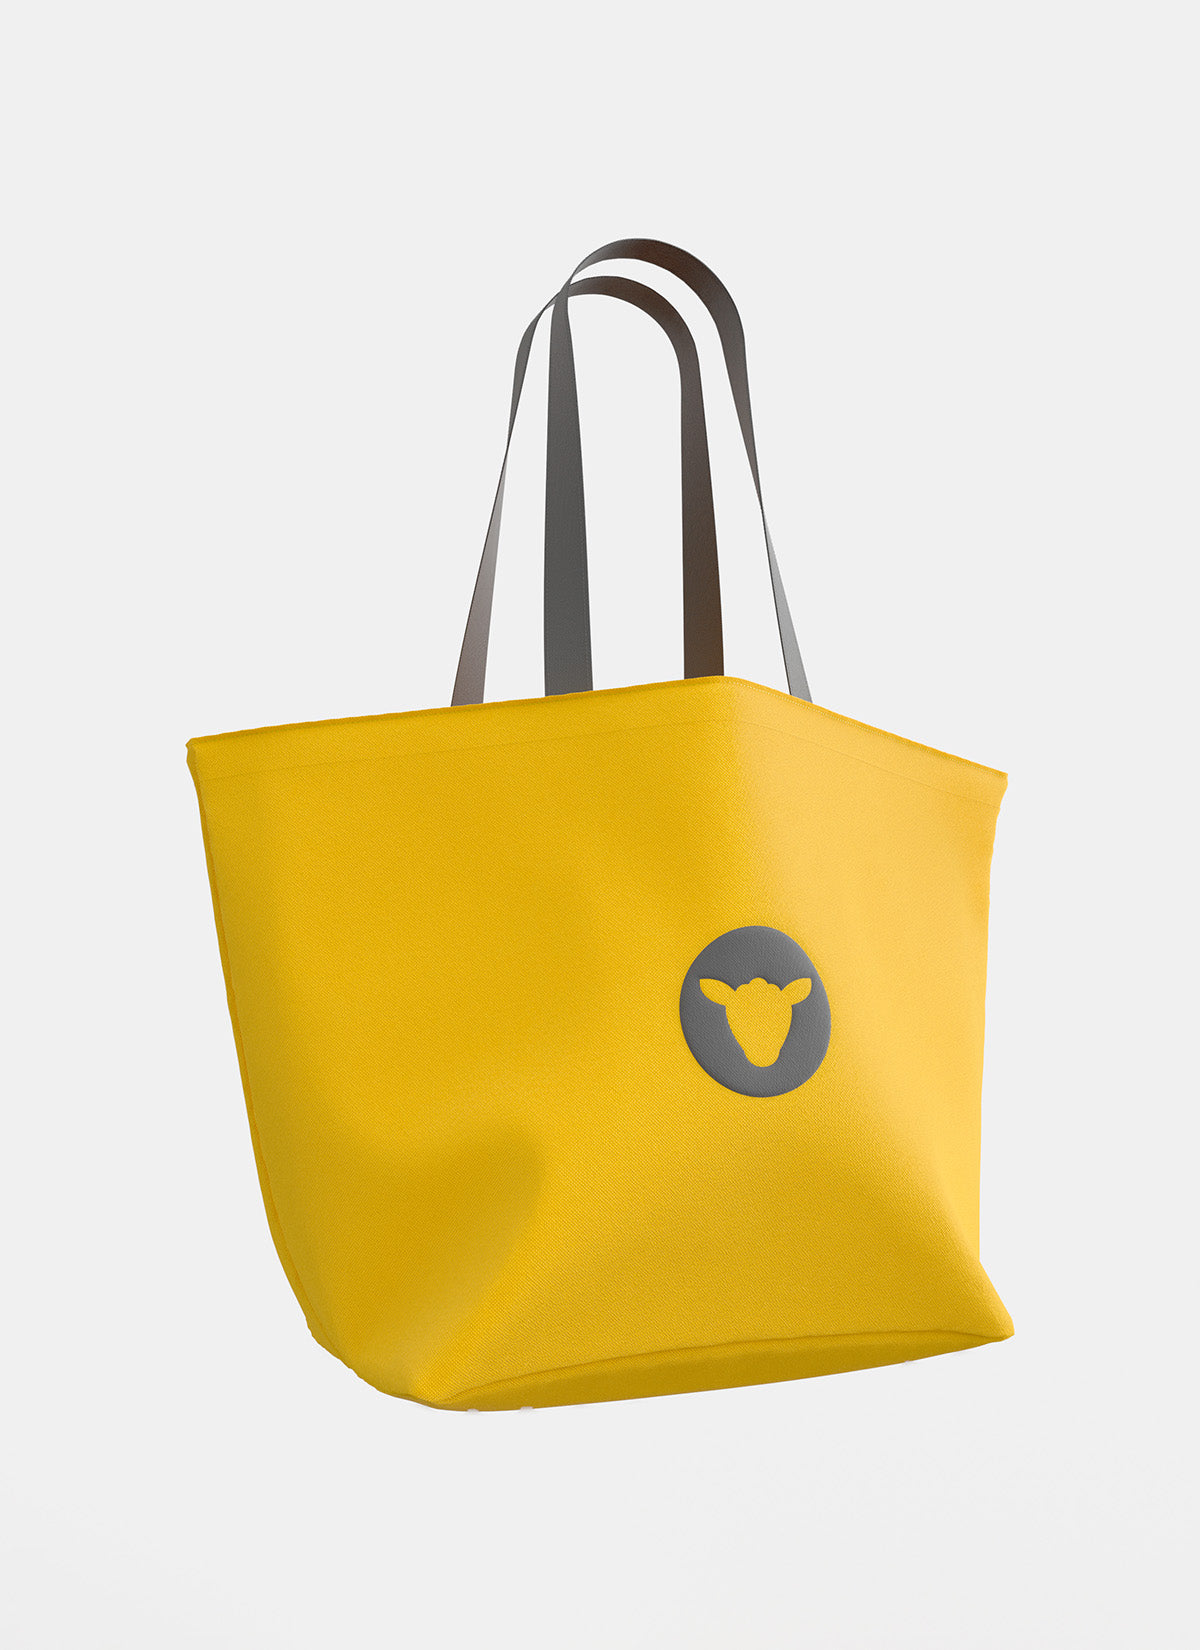 Sportswear Tote Bag - Yellow